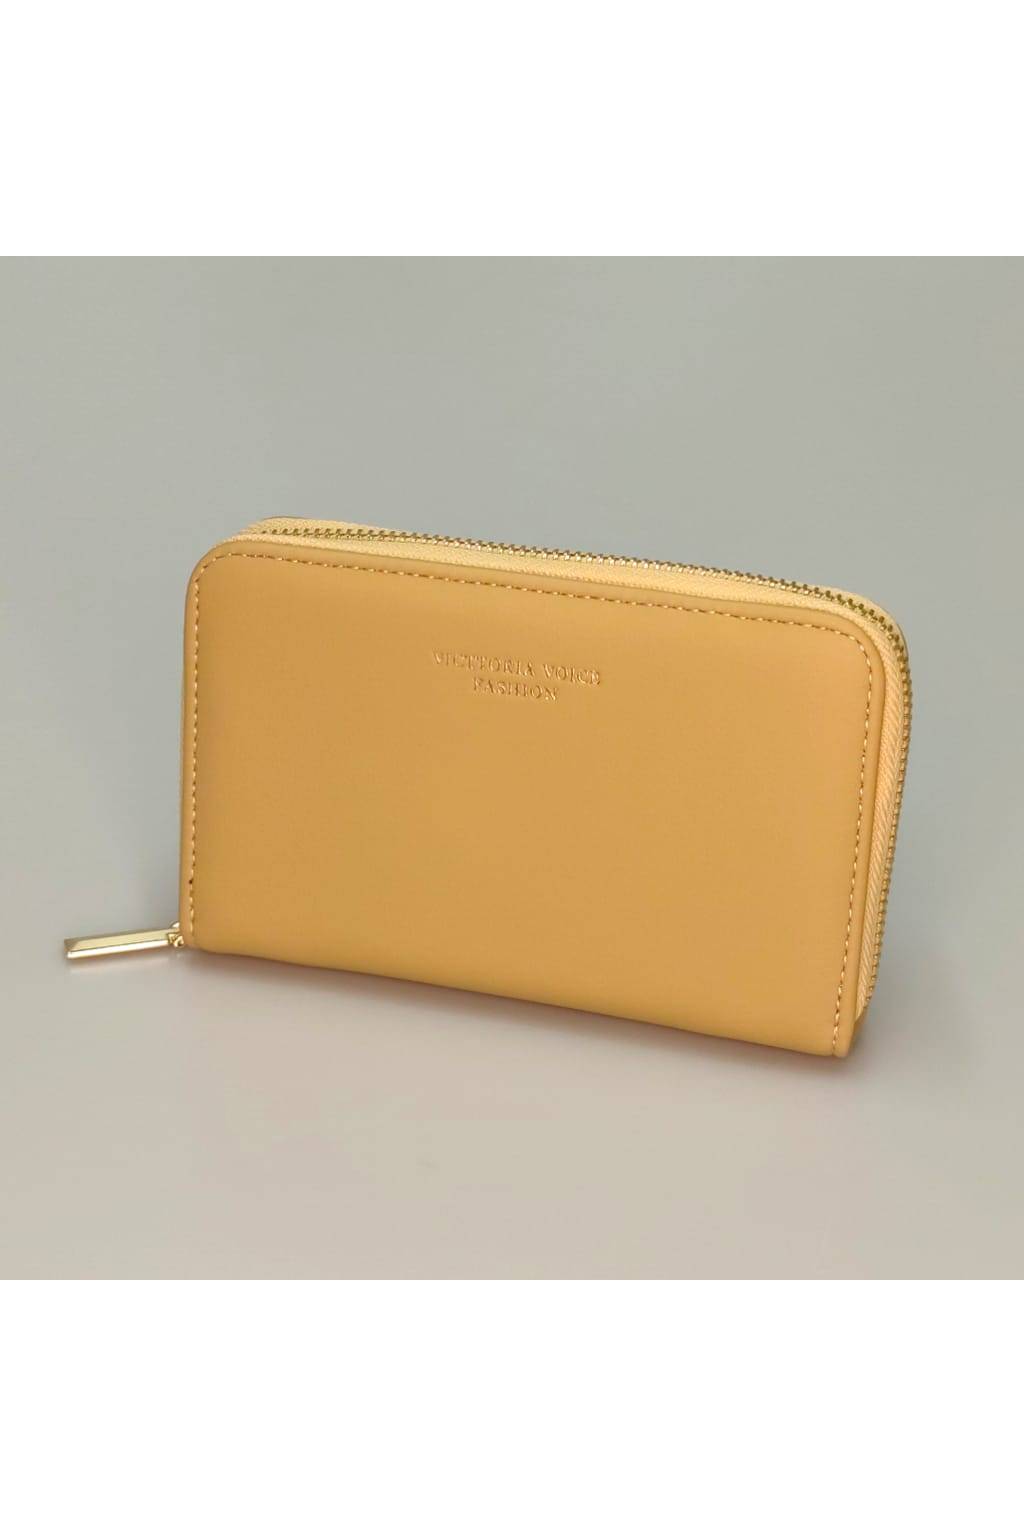 Dámska peňaženka ZY 21584 žltá www.kabelky vypredaj (3)